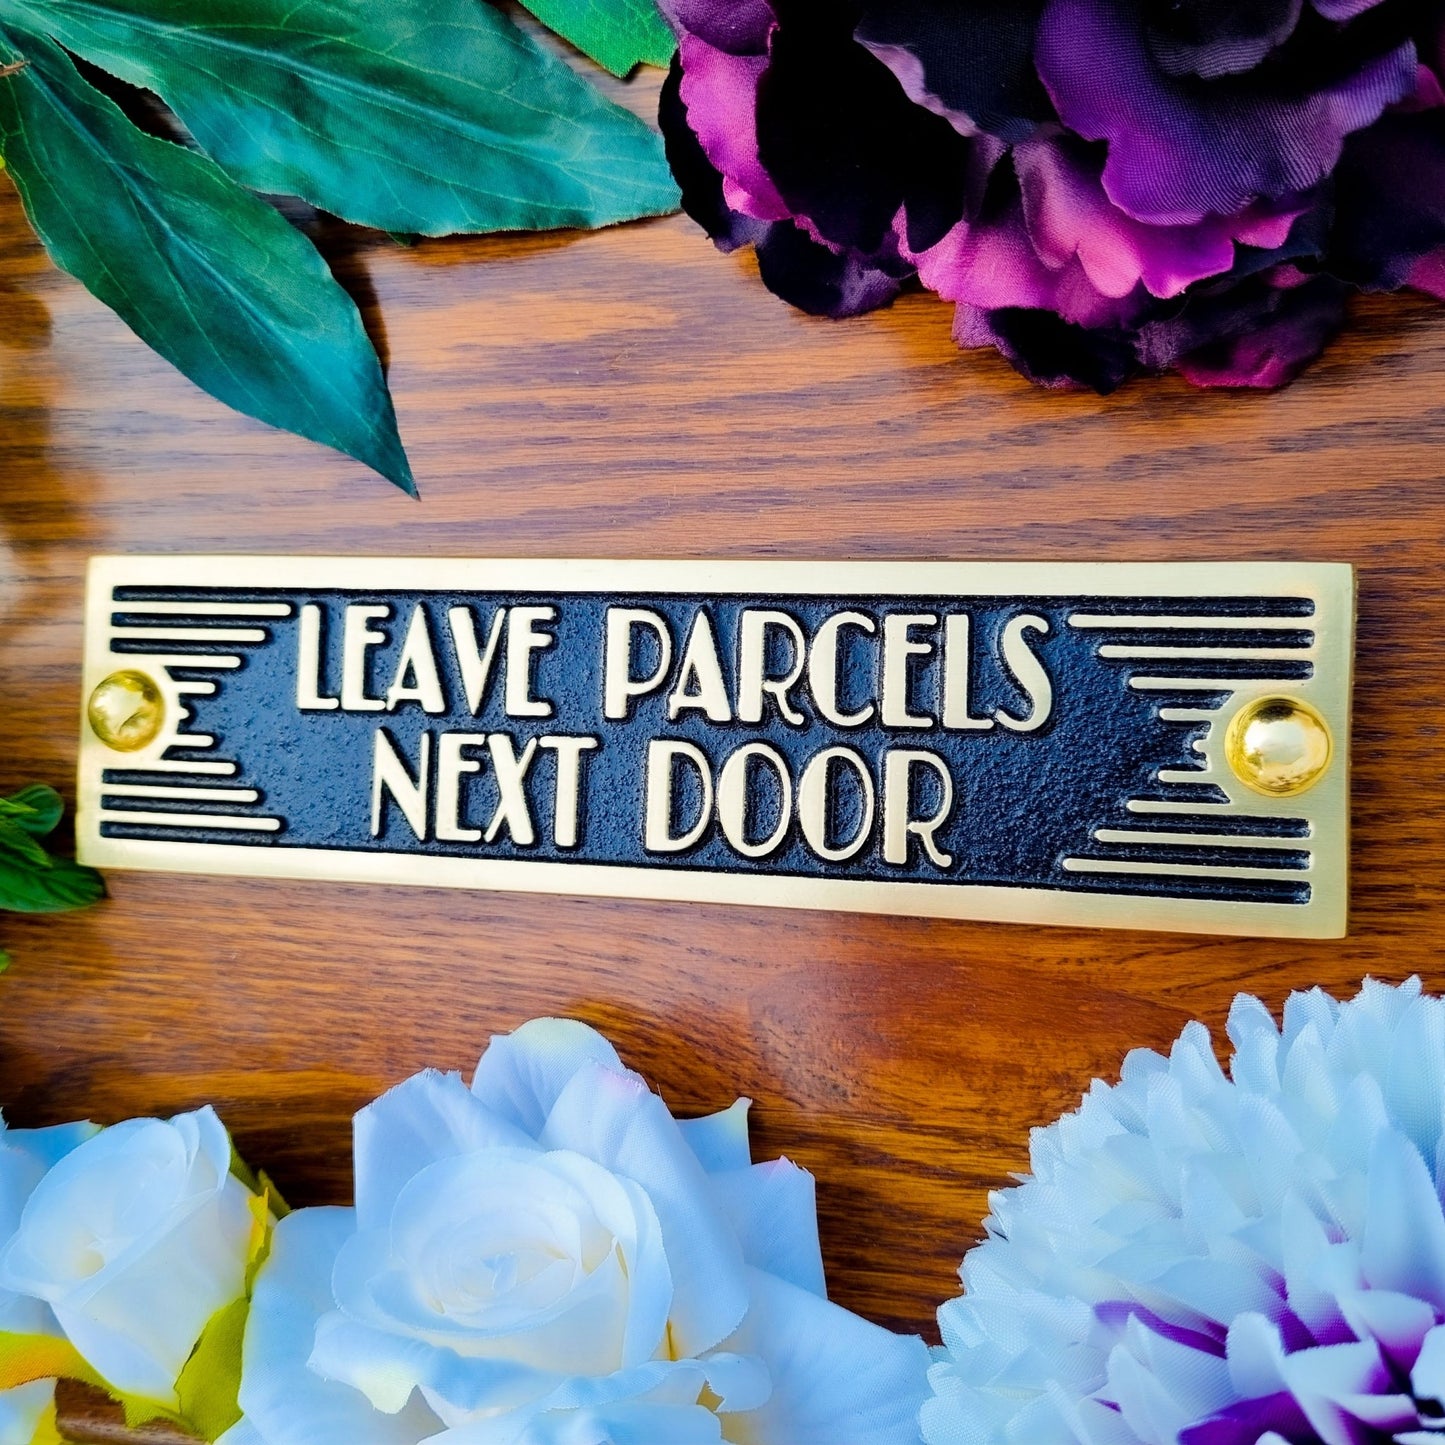 Art Deco 'Leave Parcels Next Door' Door Sign - The Metal Foundry